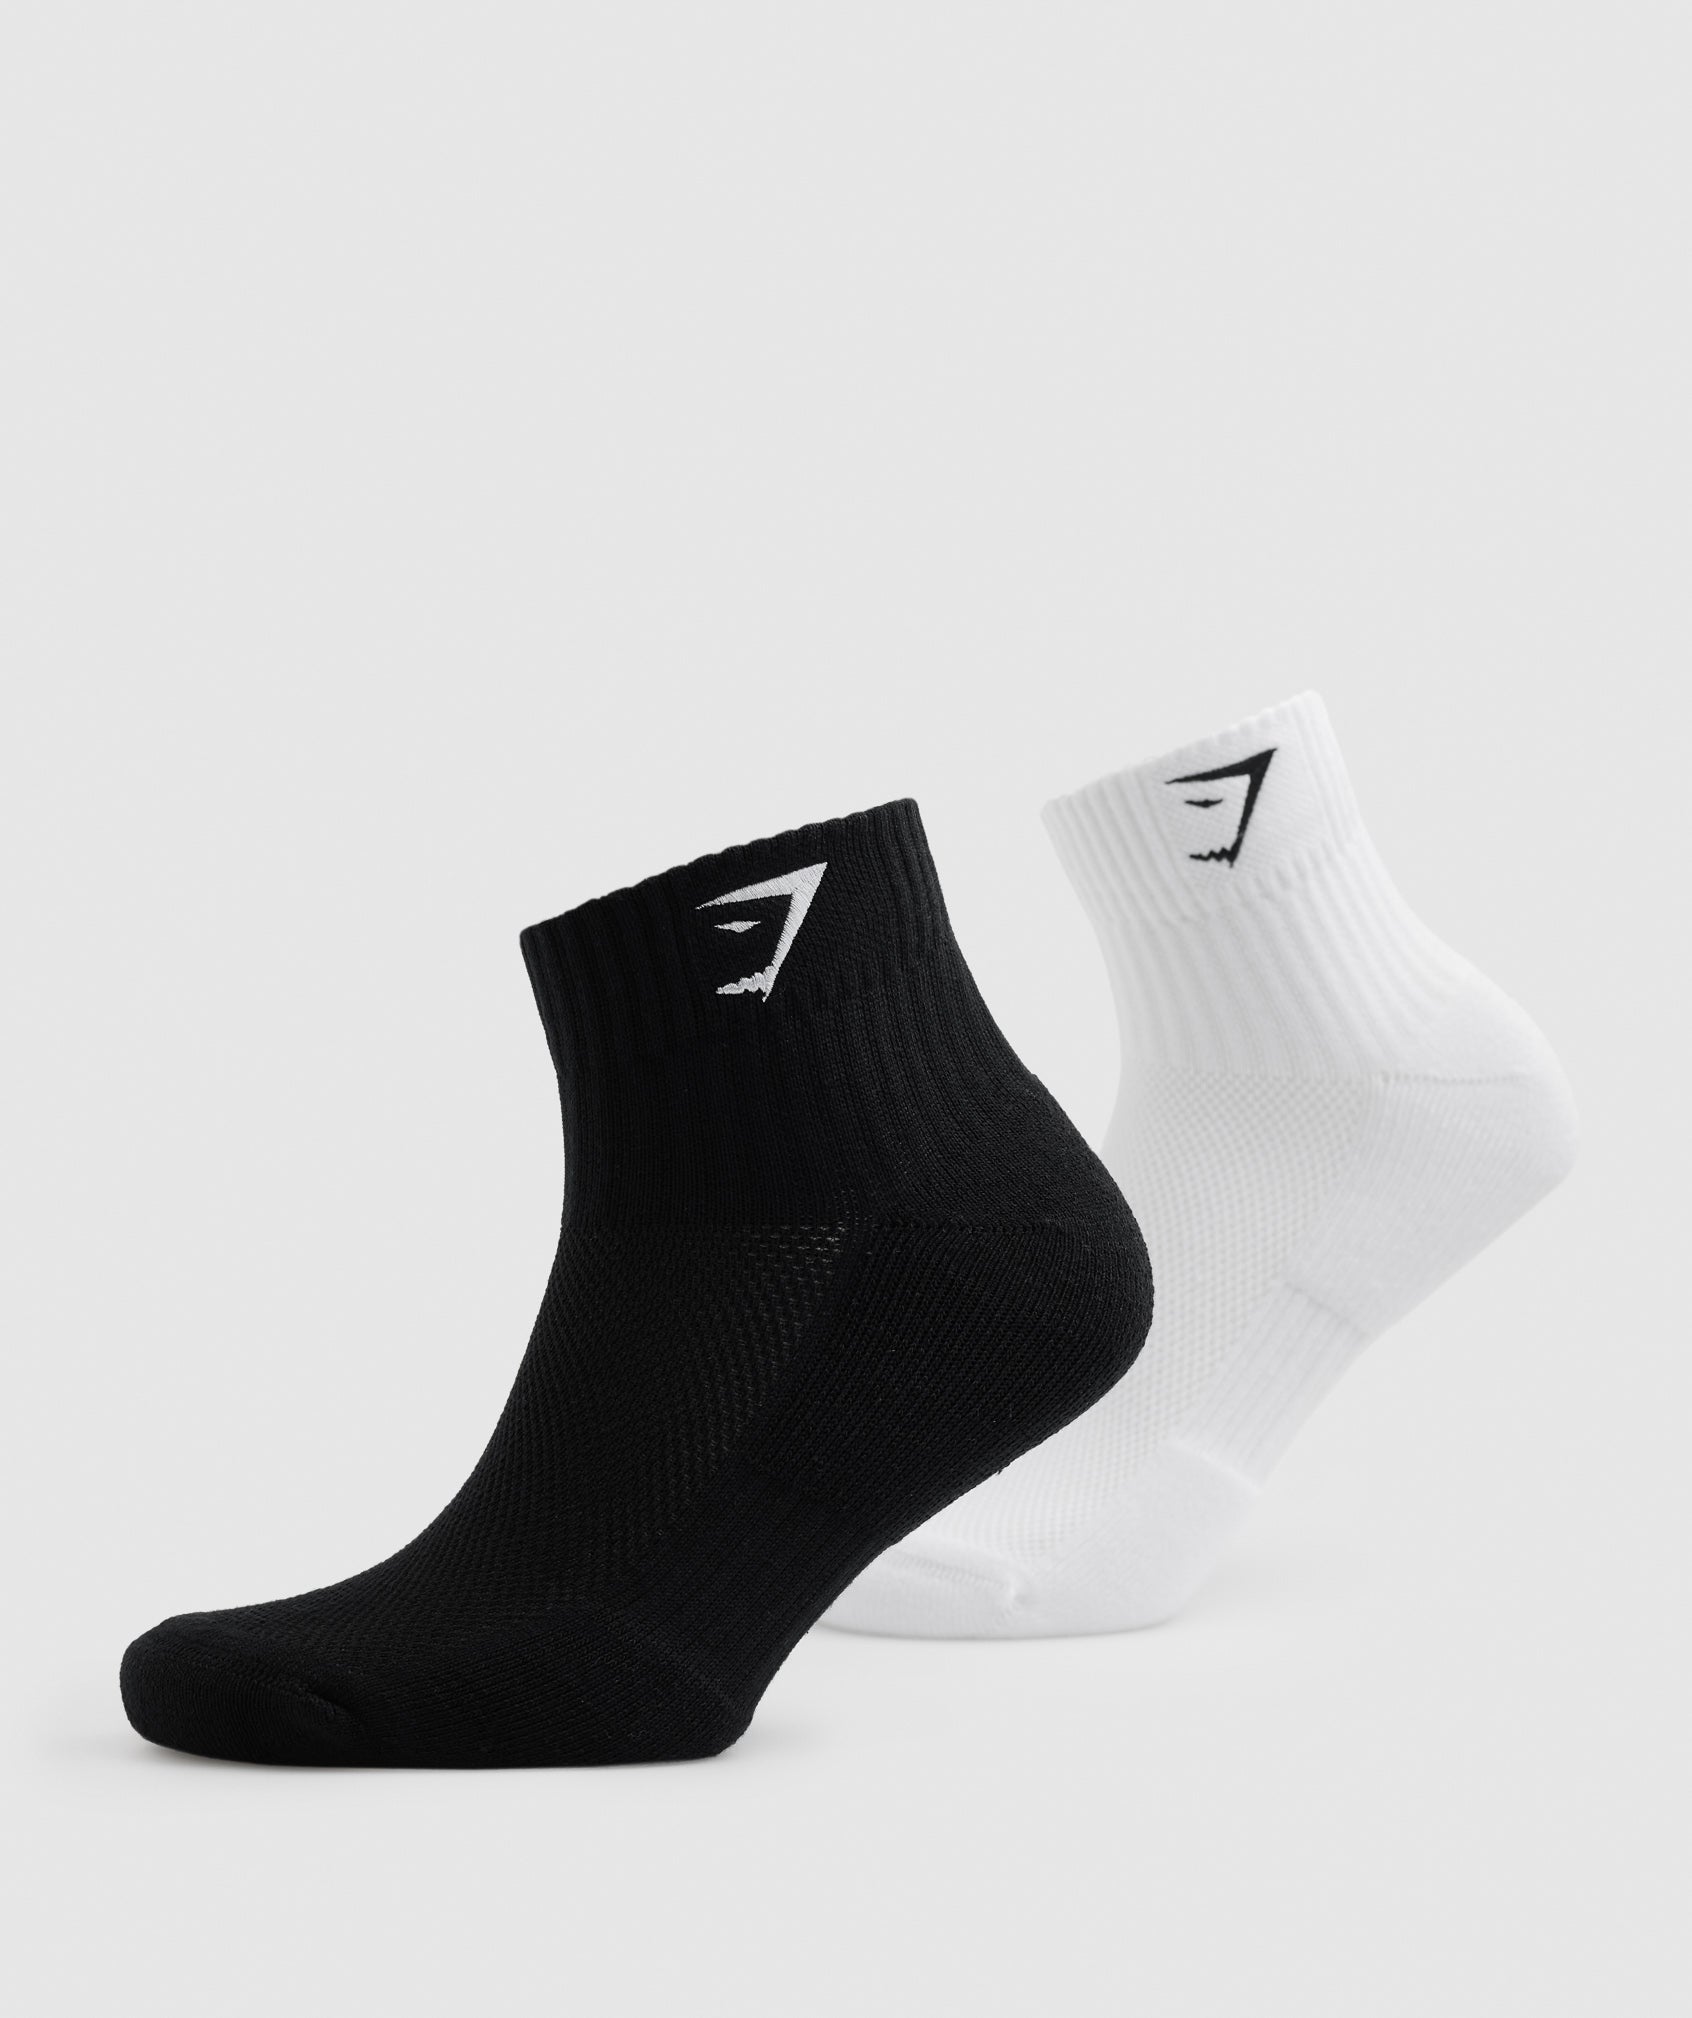 Sharkhead Embroidered Quarter Socks 2pk in White/Black - view 3